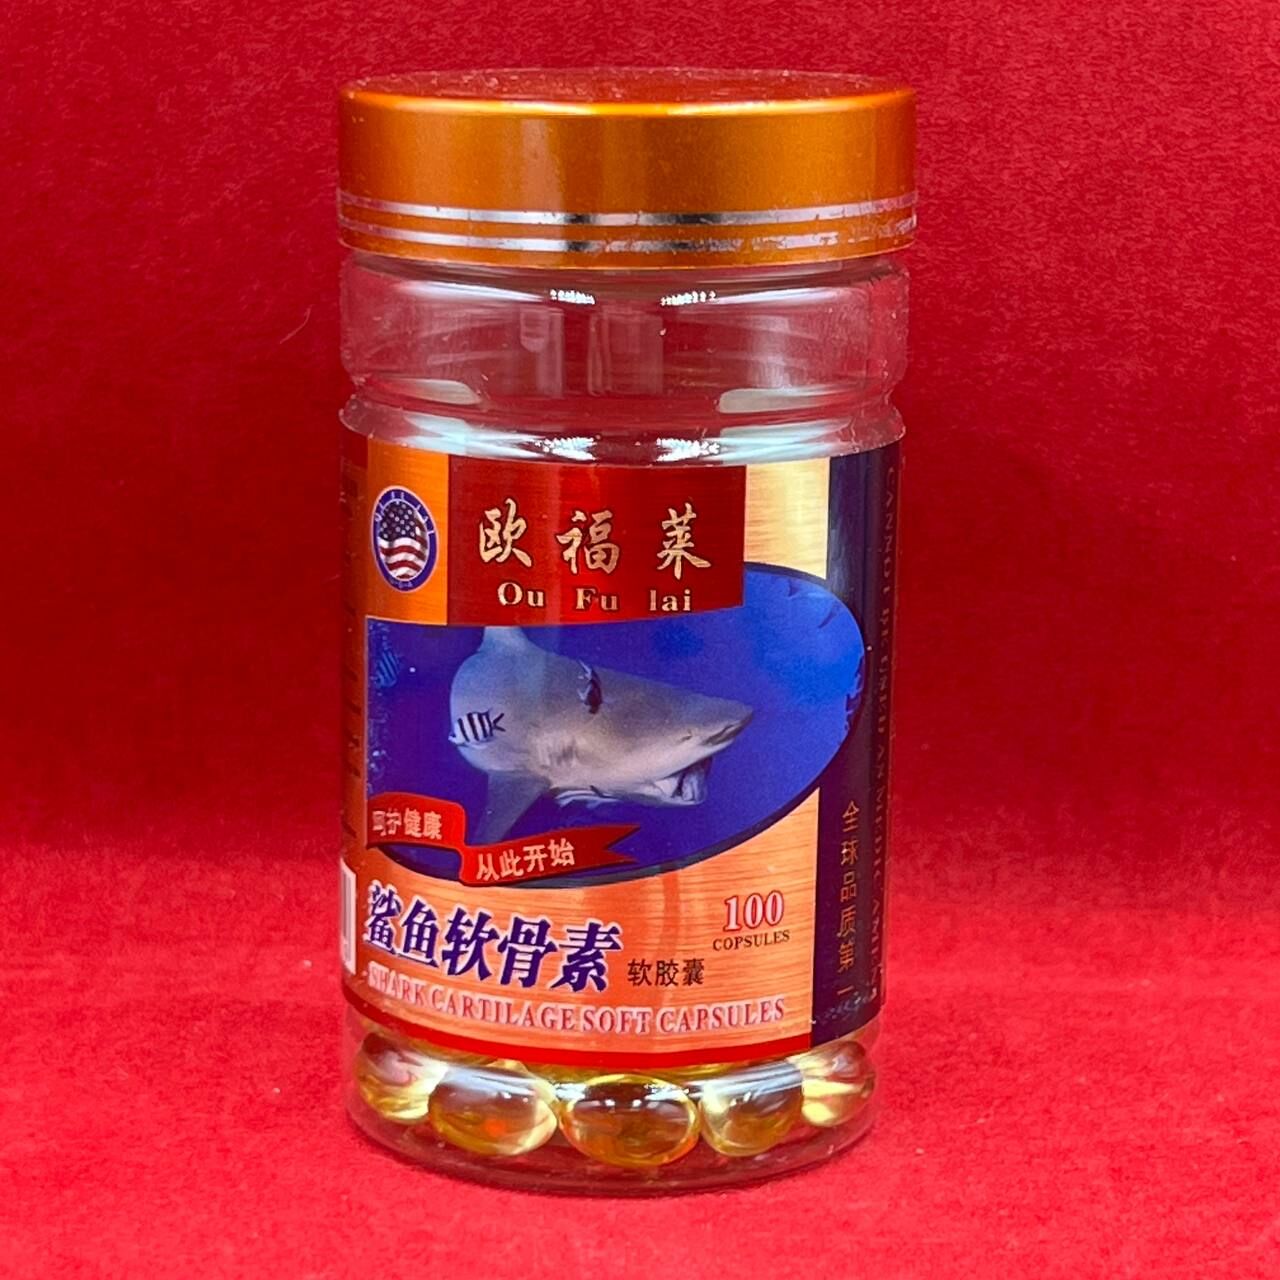 БАД Акулий хрящ Shark Cartilage Soft capsule общеукрепляющее для здоровья связок и суставов Ou Fu Lai